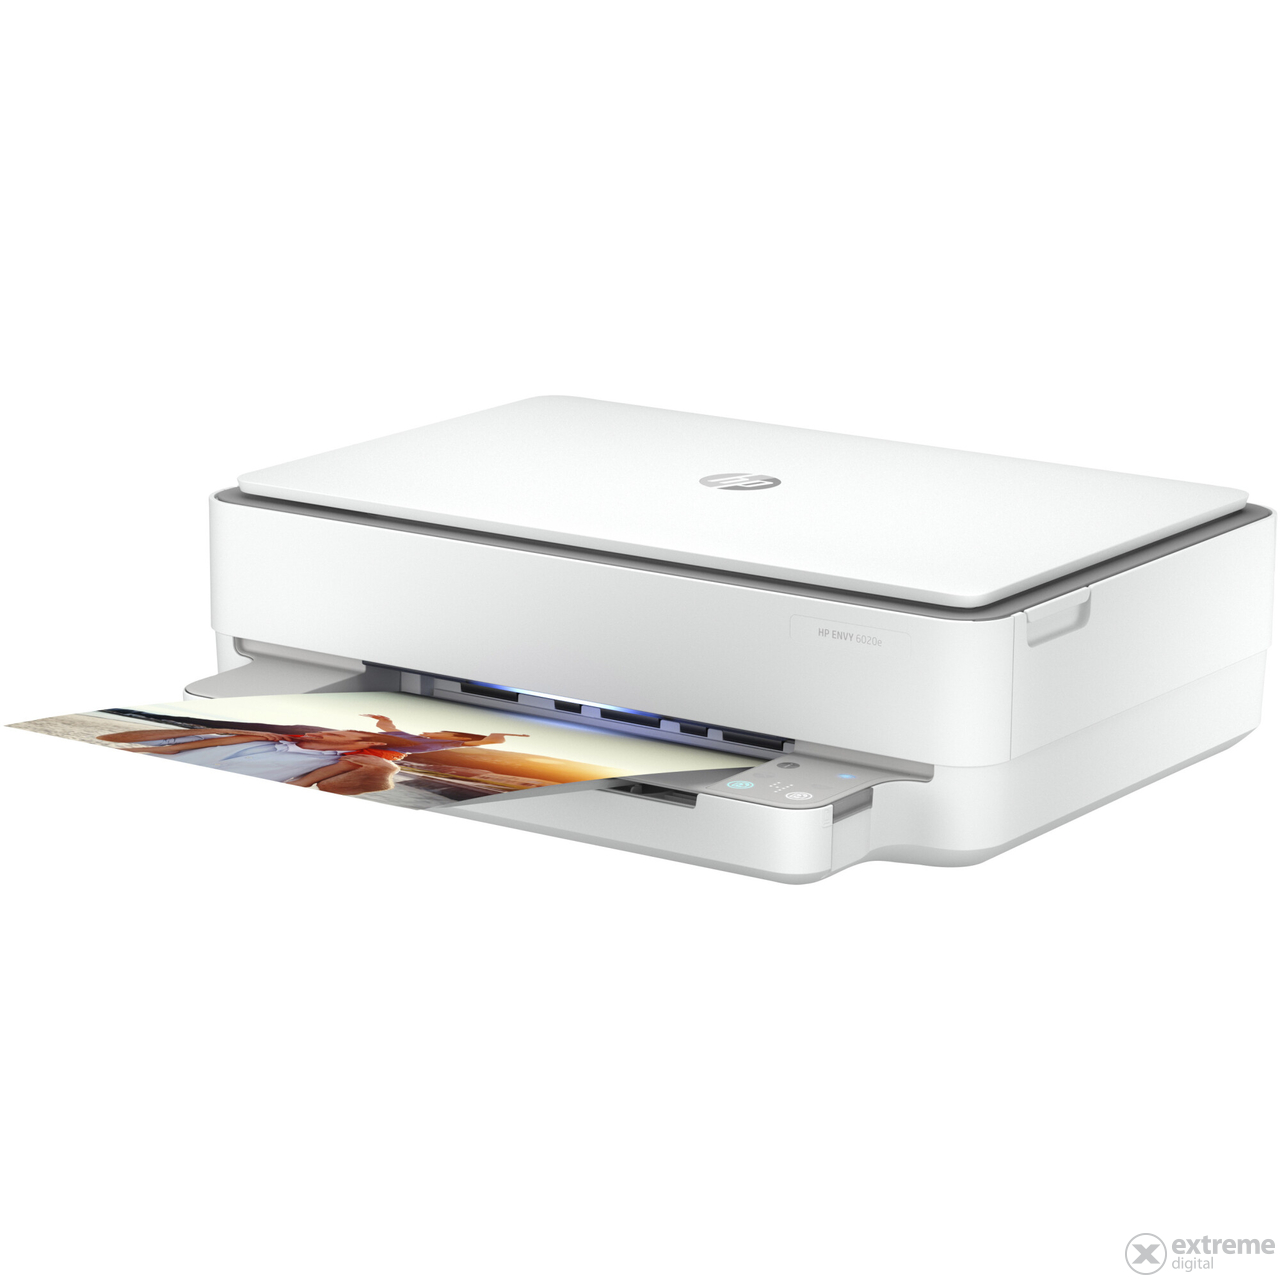 HP ENVY 6020E multifunkcijski tintni printer